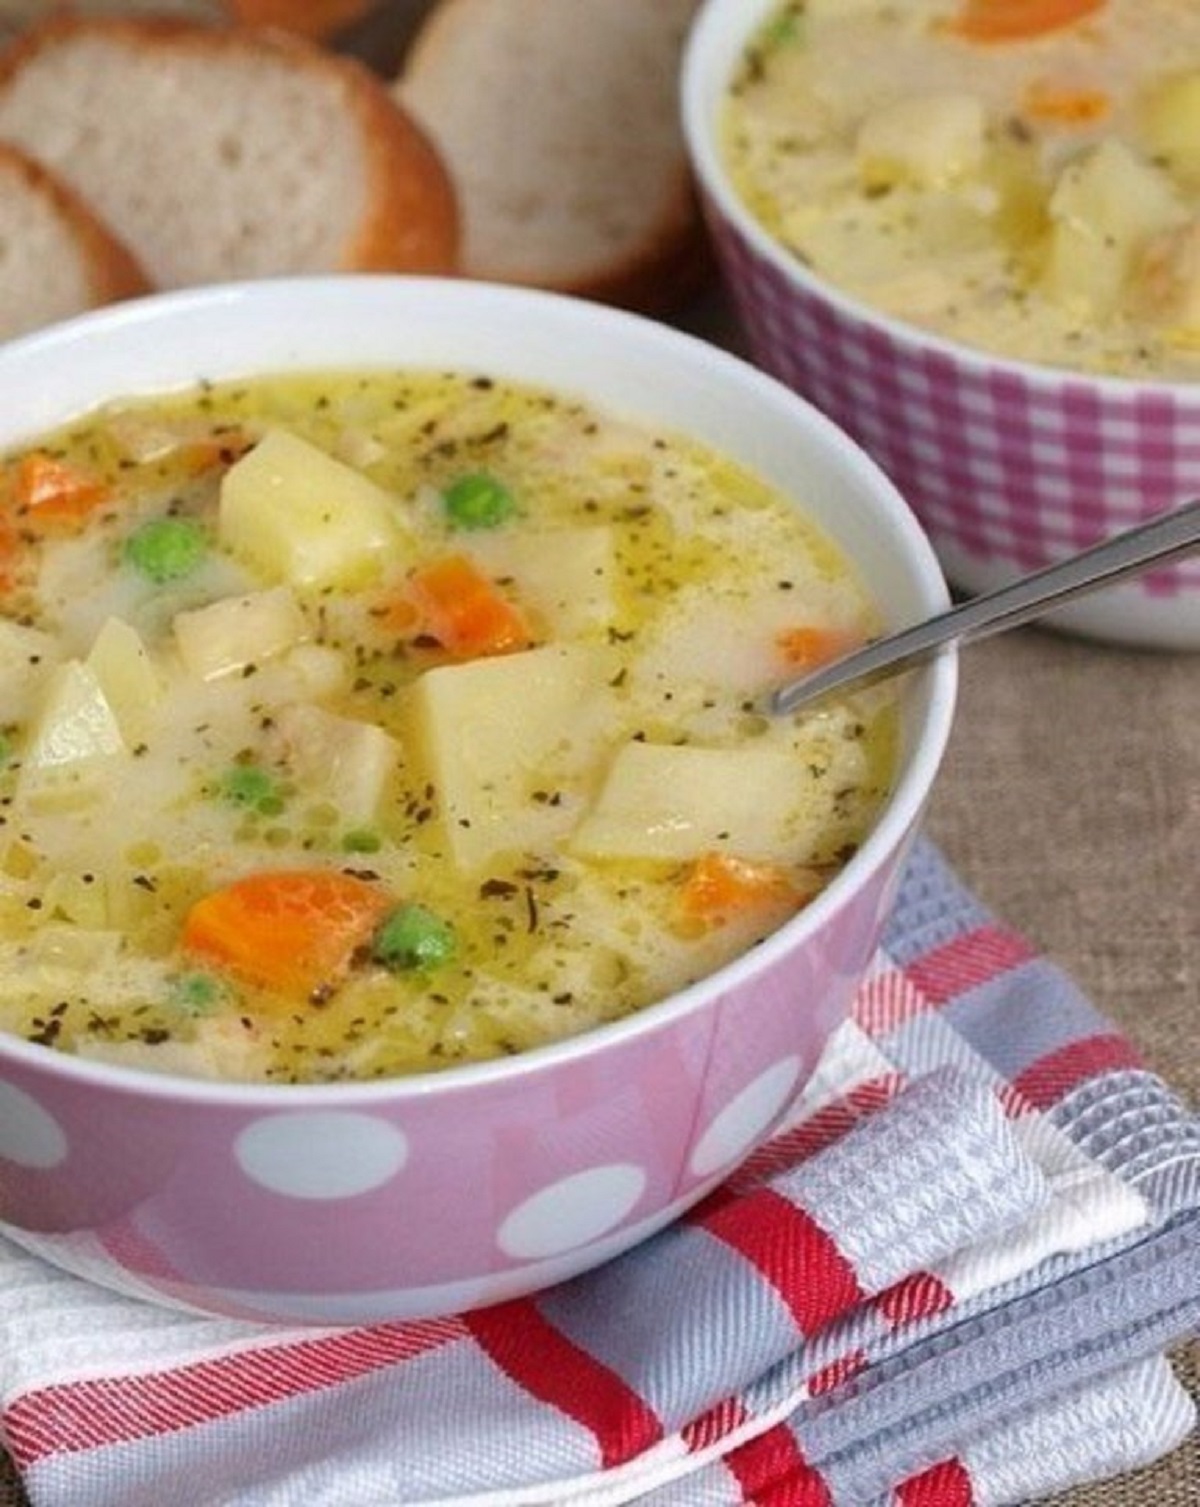 Сварить вкуснейший супчик. Для супа. Ceg. Овощи для супчика. Суп вкусный и простой.